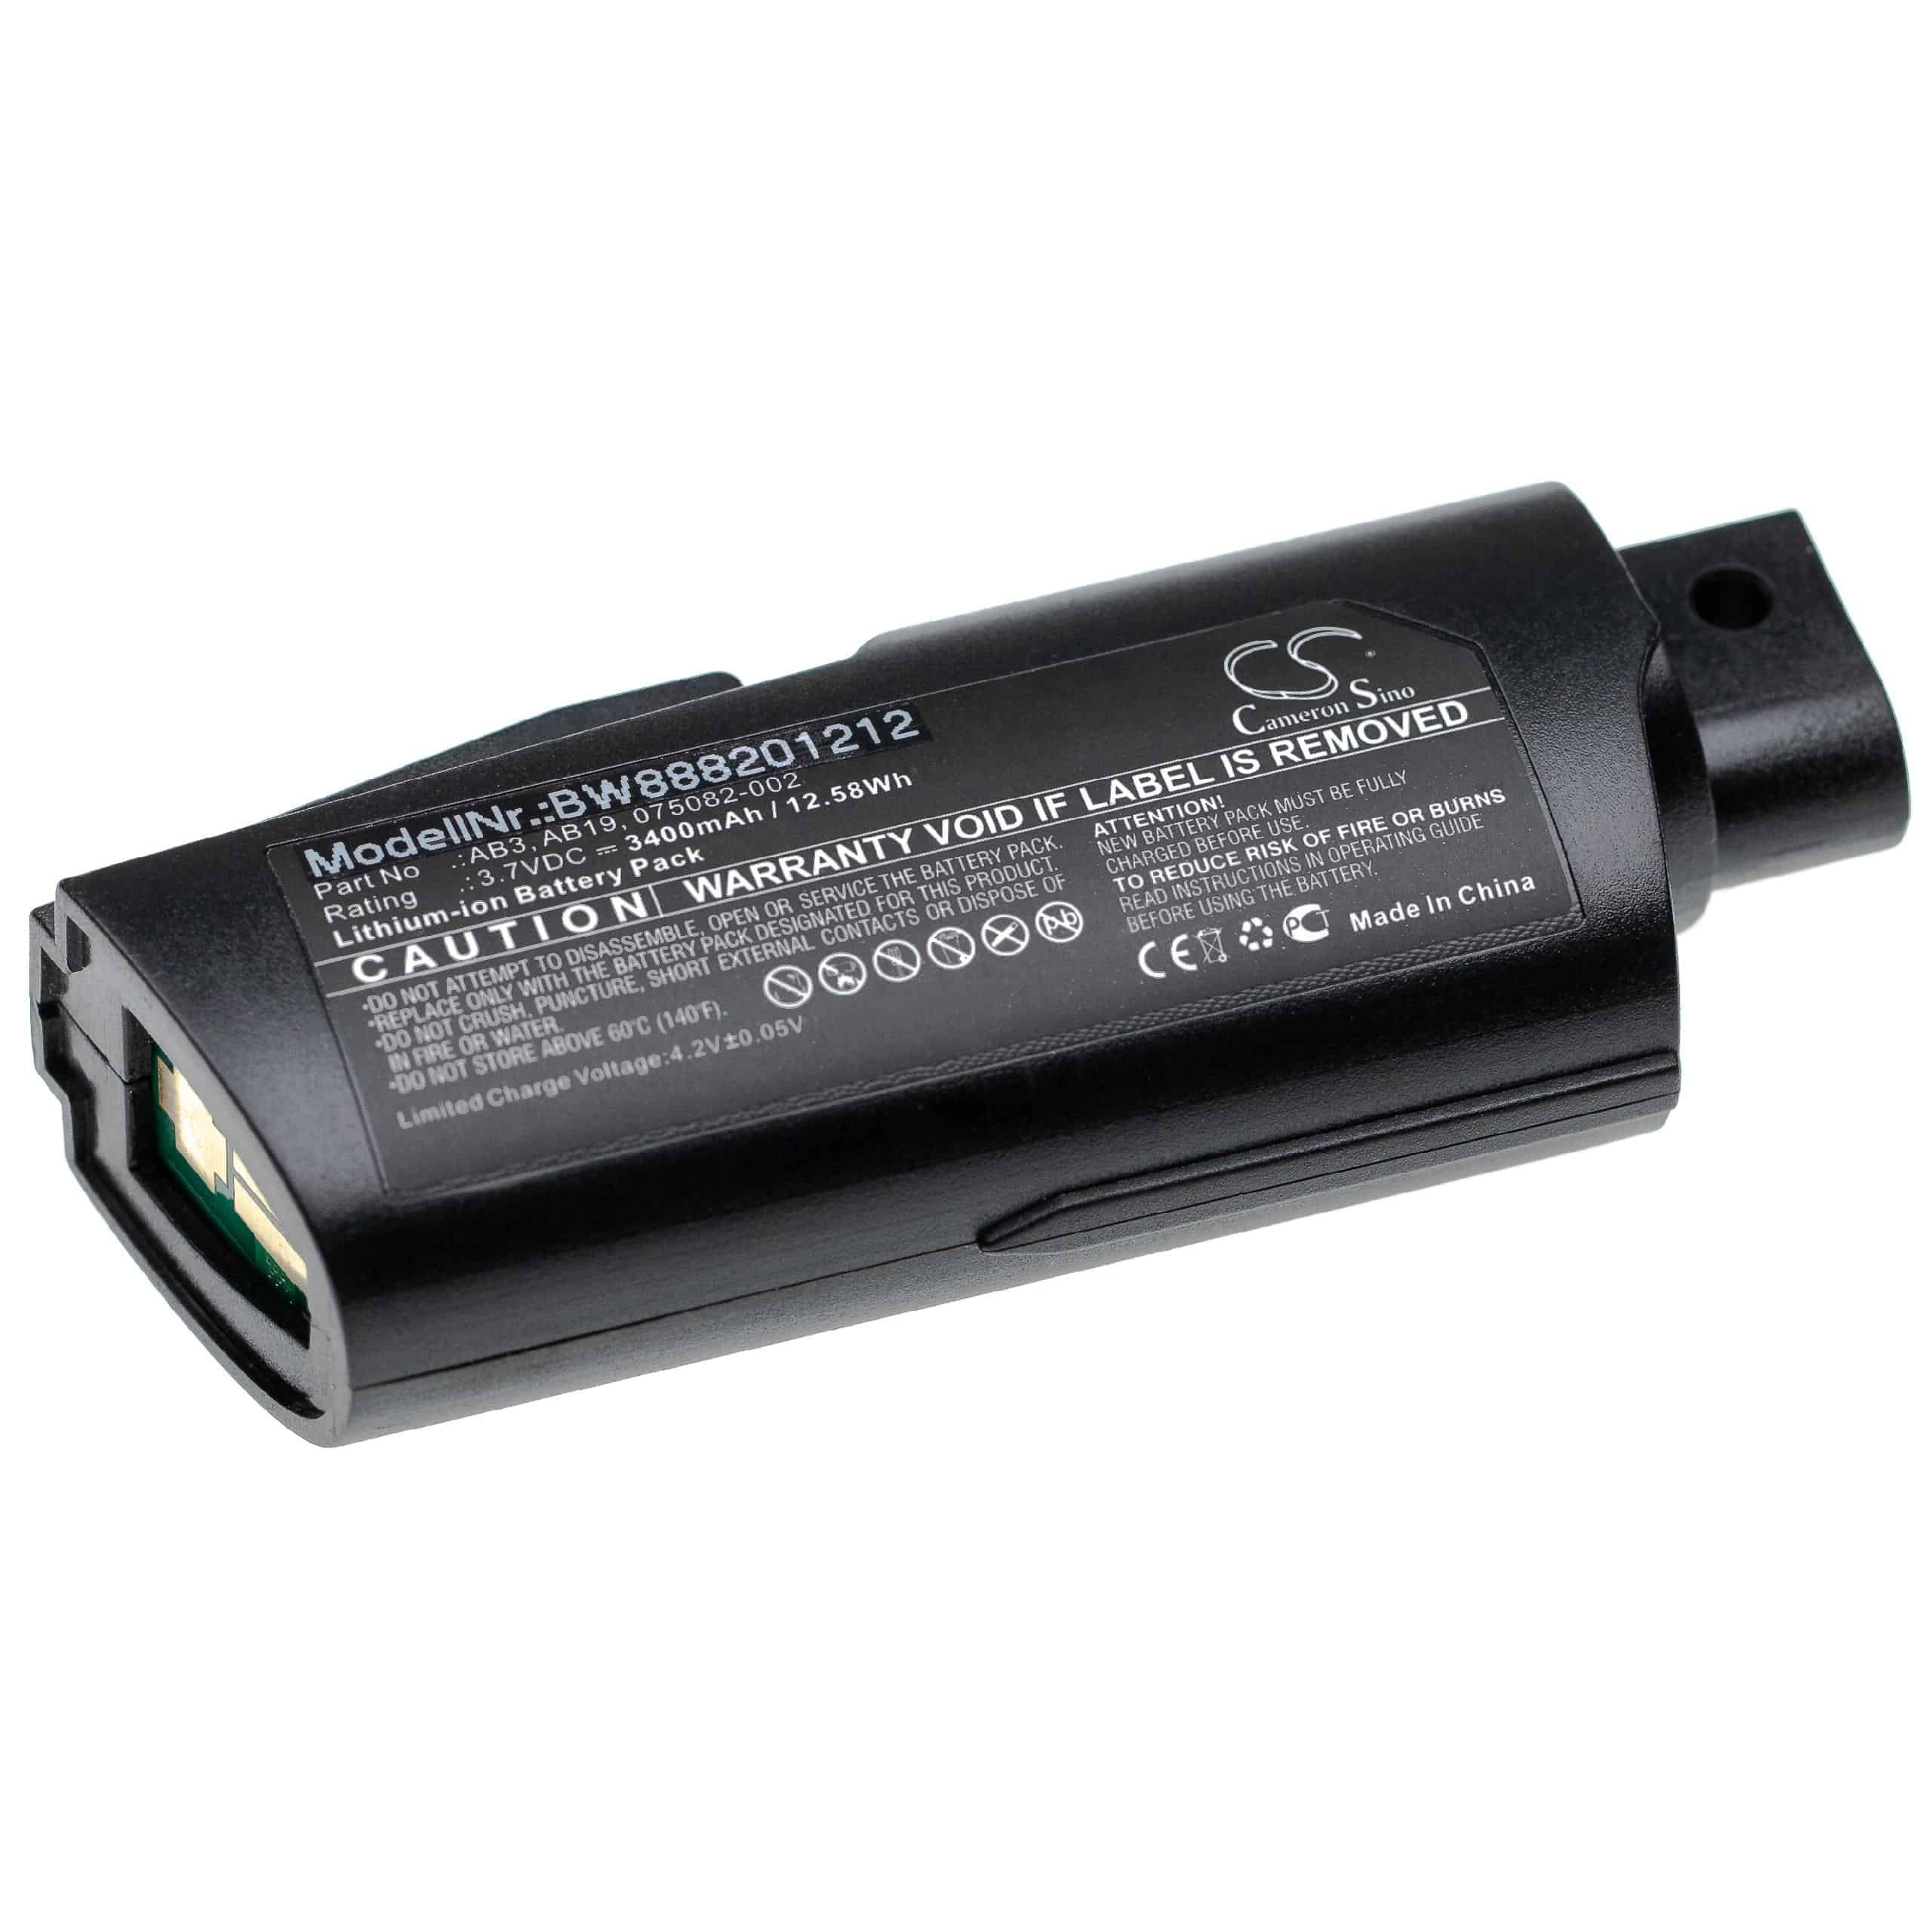 Batterie remplace Intermec AB19, 075082-002, AB3 pour scanner de code-barre - 3400mAh 3,7V Li-ion